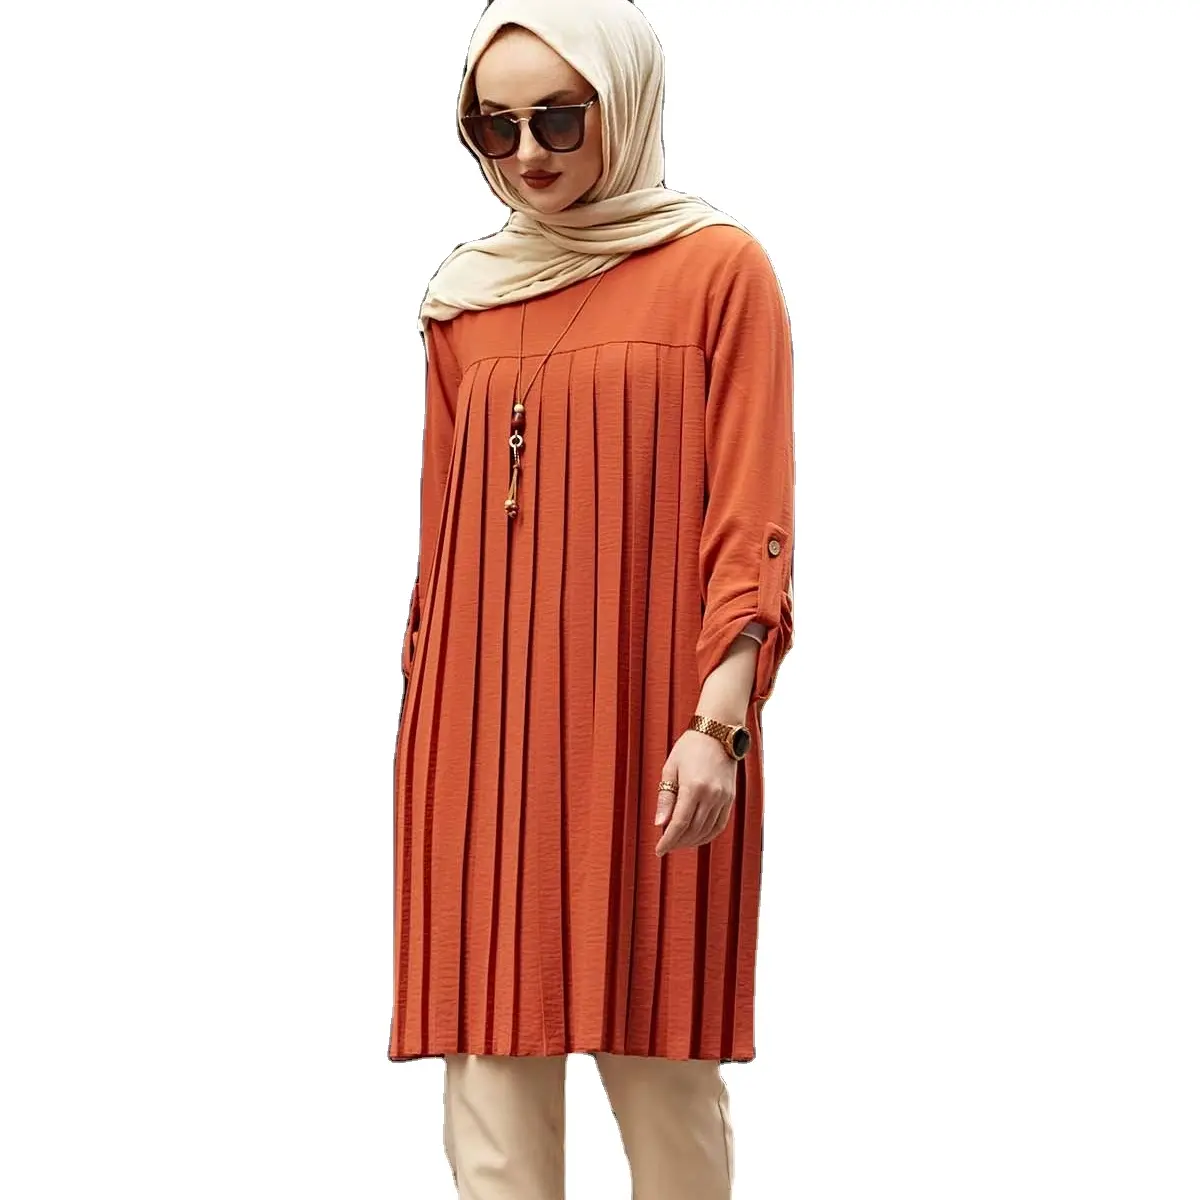 Top lunghi per abbigliamento donna musulmana poliestere Abaya adulti medio oriente 808 abbigliamento islamico all'ingrosso in stile Abaya turco 200